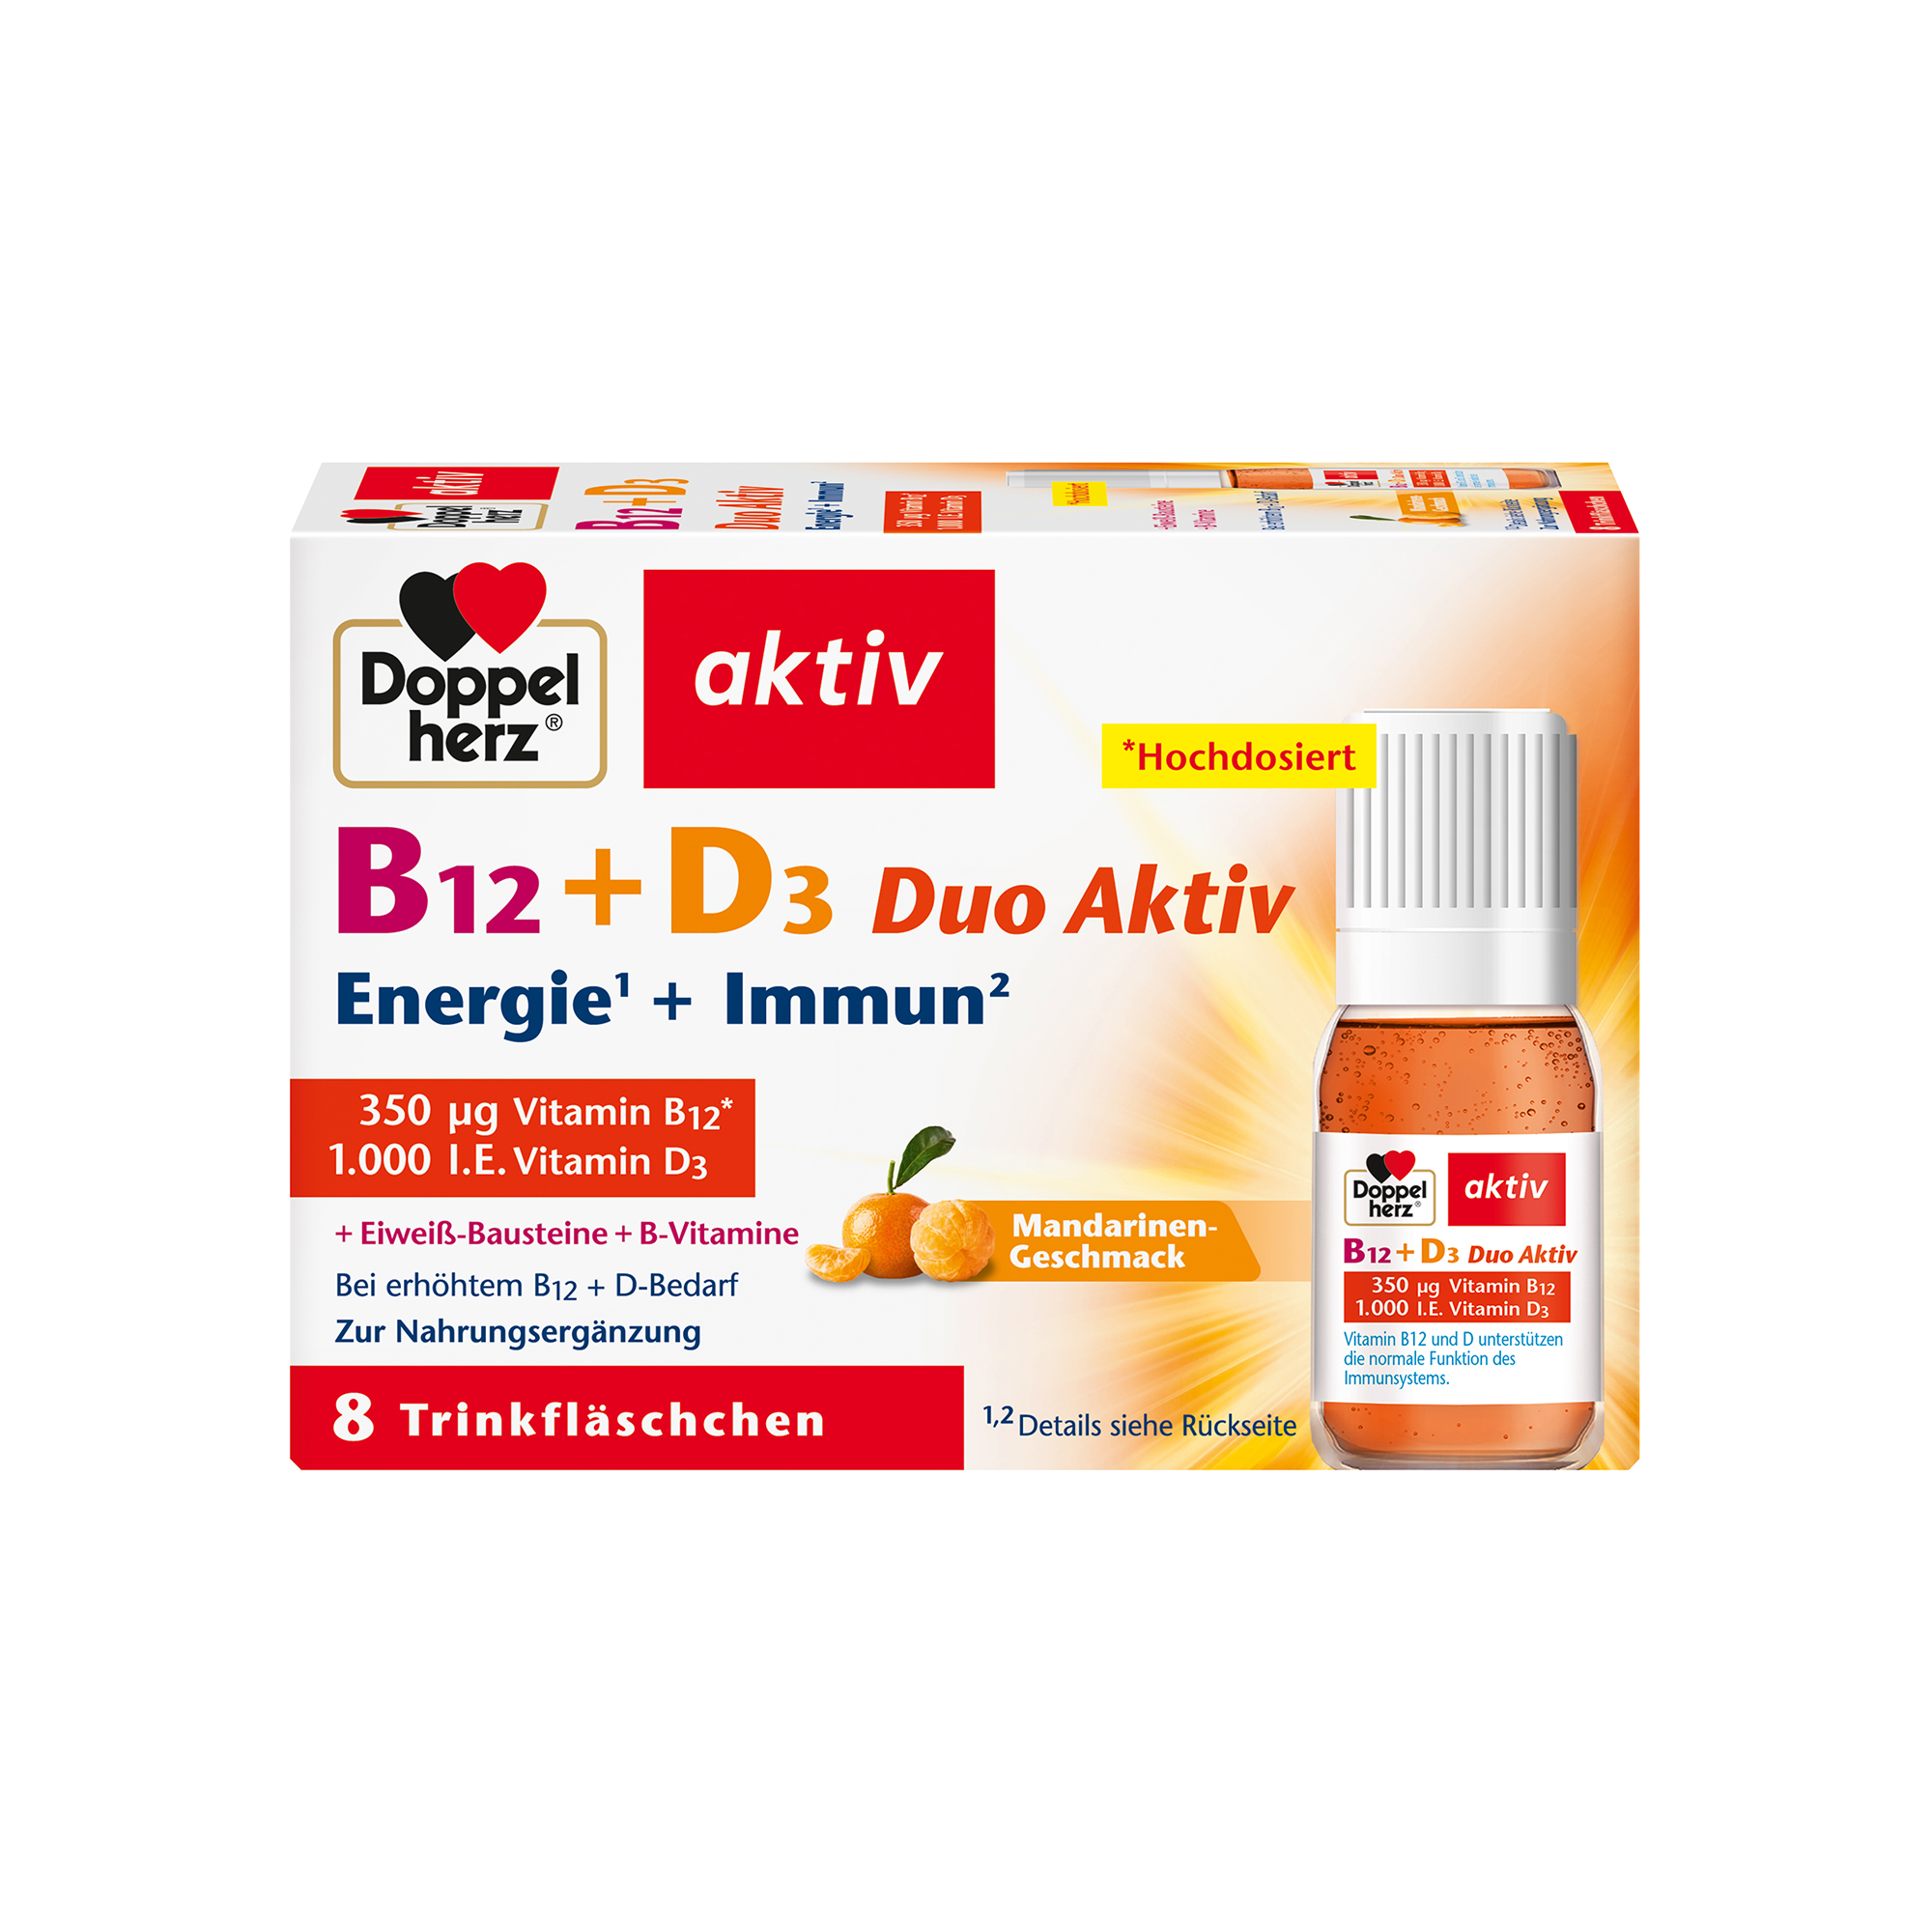 Doppelherz aktiv B12 + D3 Duo Aktiv, 8 Trinkflaschen